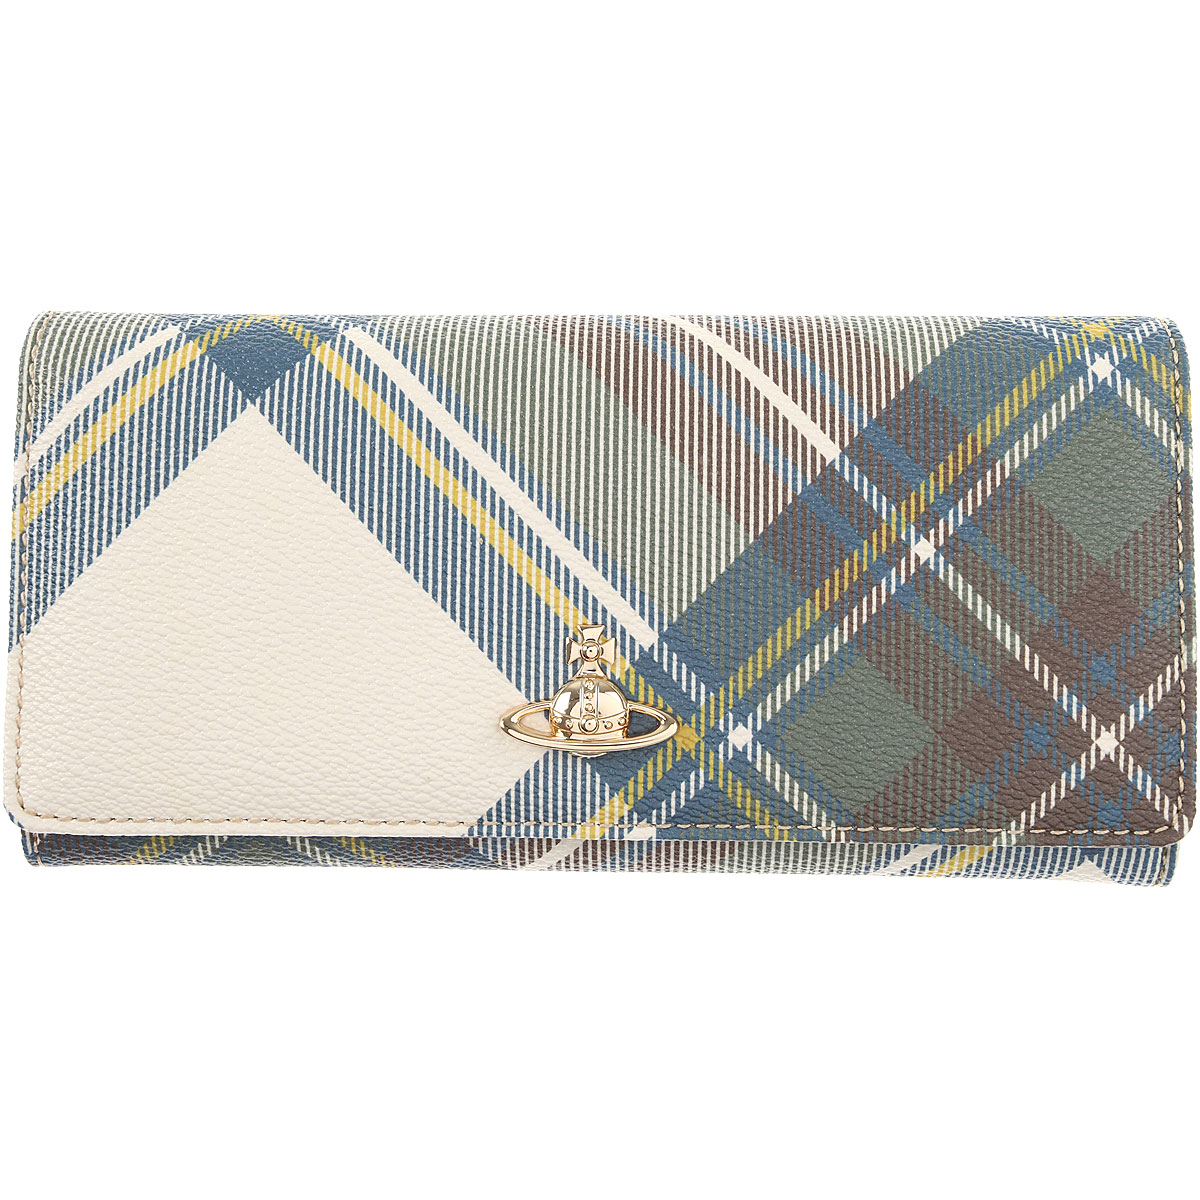 Vivienne Westwood Brieftasche für Damen, Portemonnaie, Geldbörsen, Geldbeutel Günstig im Sale, Blau, Beschichtetes Kanvas, 2017